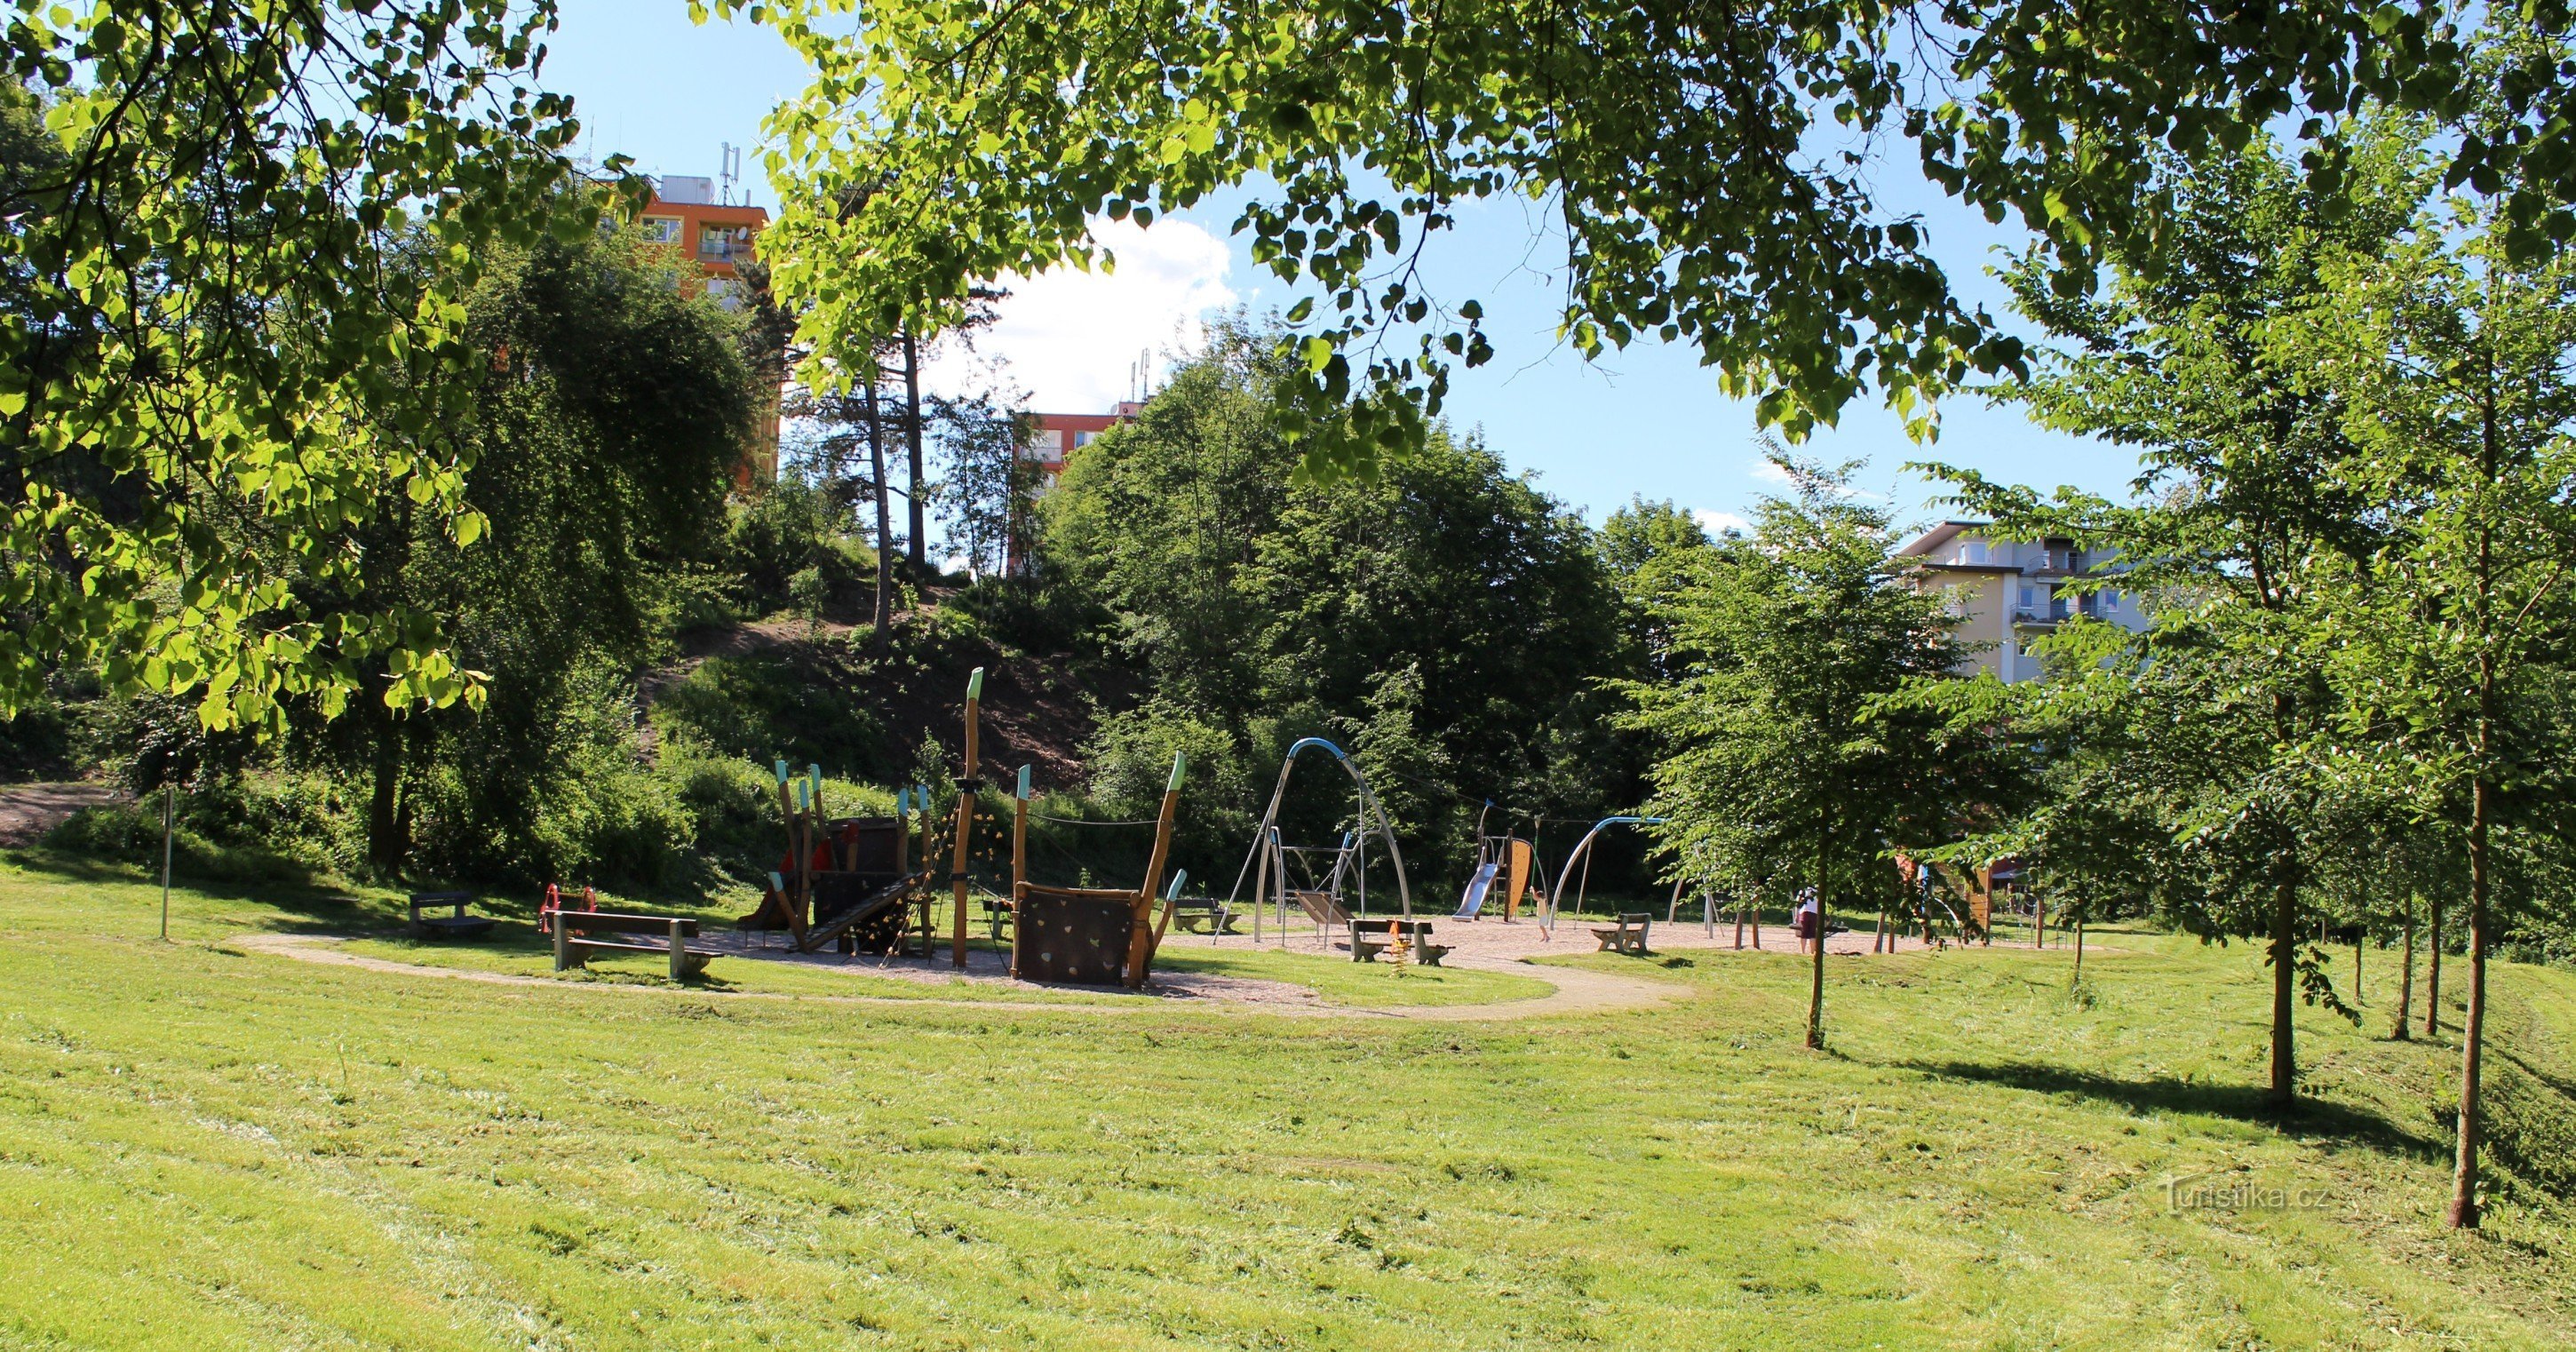 Children's playground near Klavírka